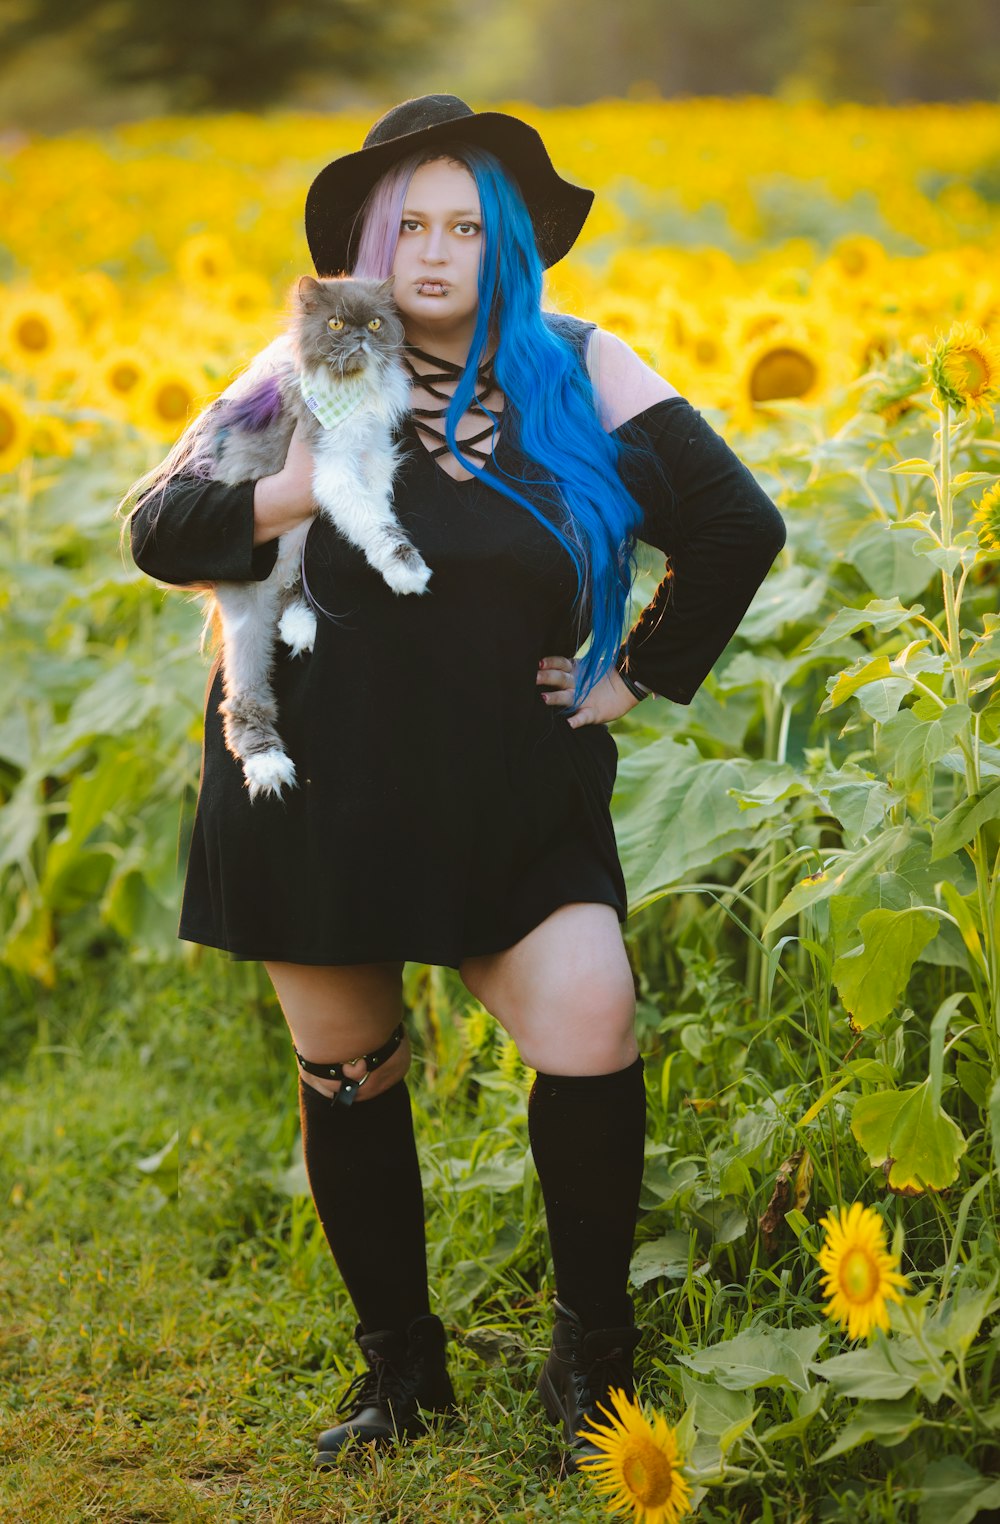 Una mujer de pelo azul sostiene a un gato en un campo de girasoles